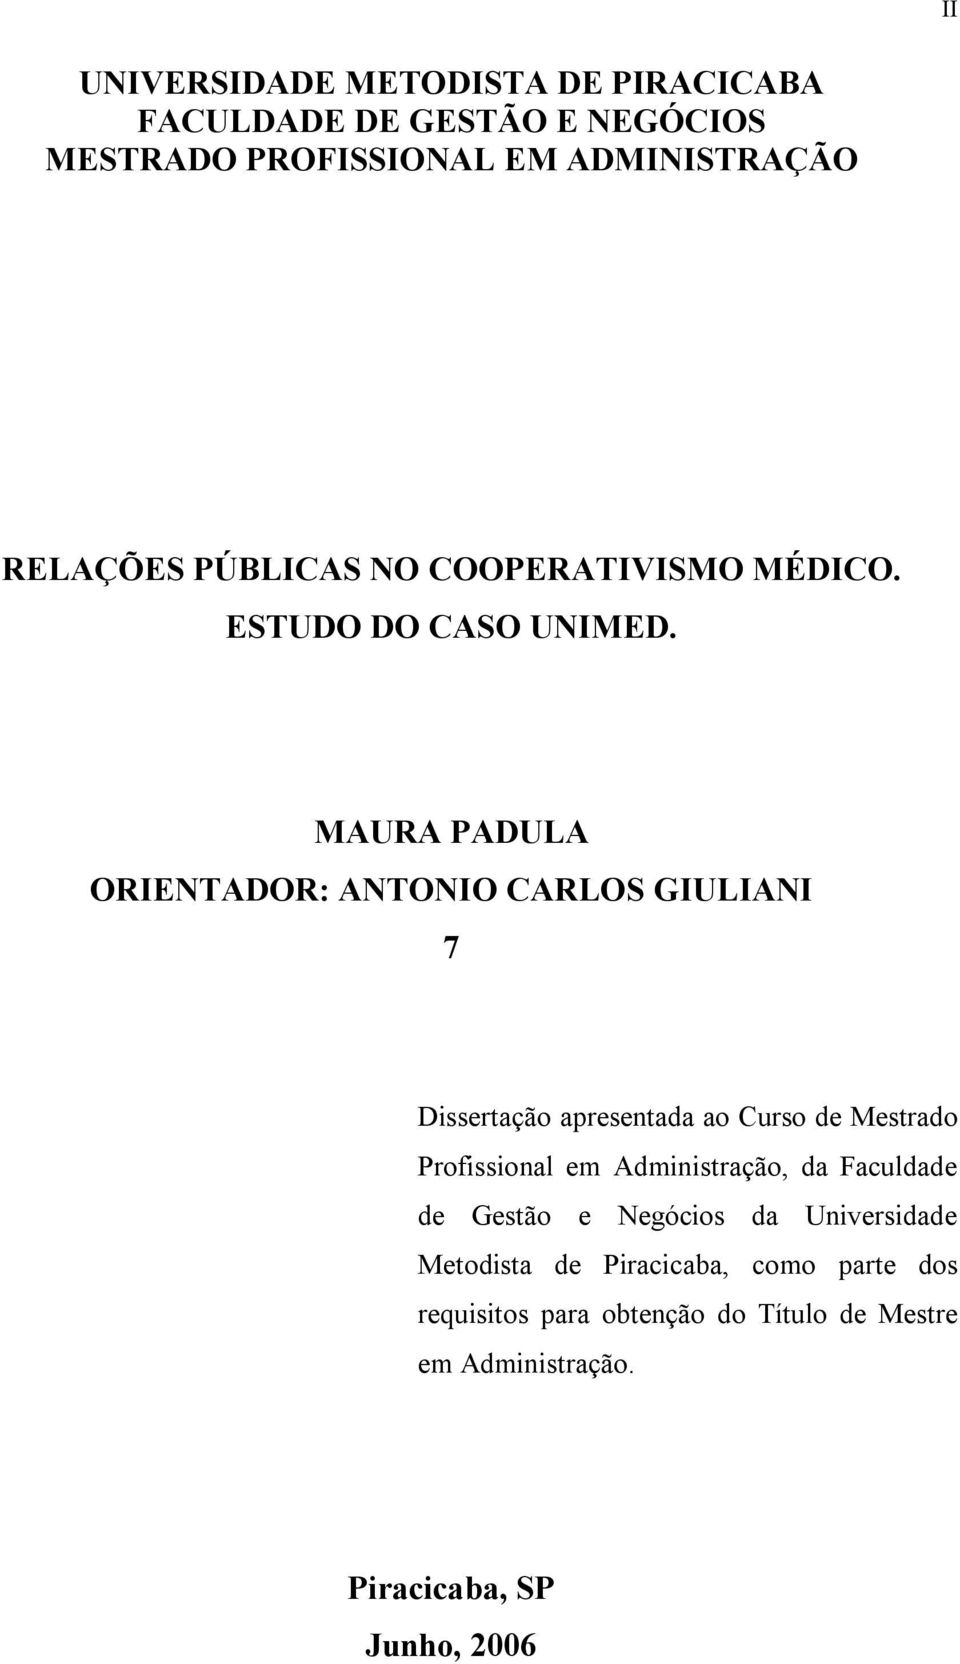 MAURA PADULA ORIENTADOR: ANTONIO CARLOS GIULIANI 7 Dissertação apresentada ao Curso de Mestrado Profissional em